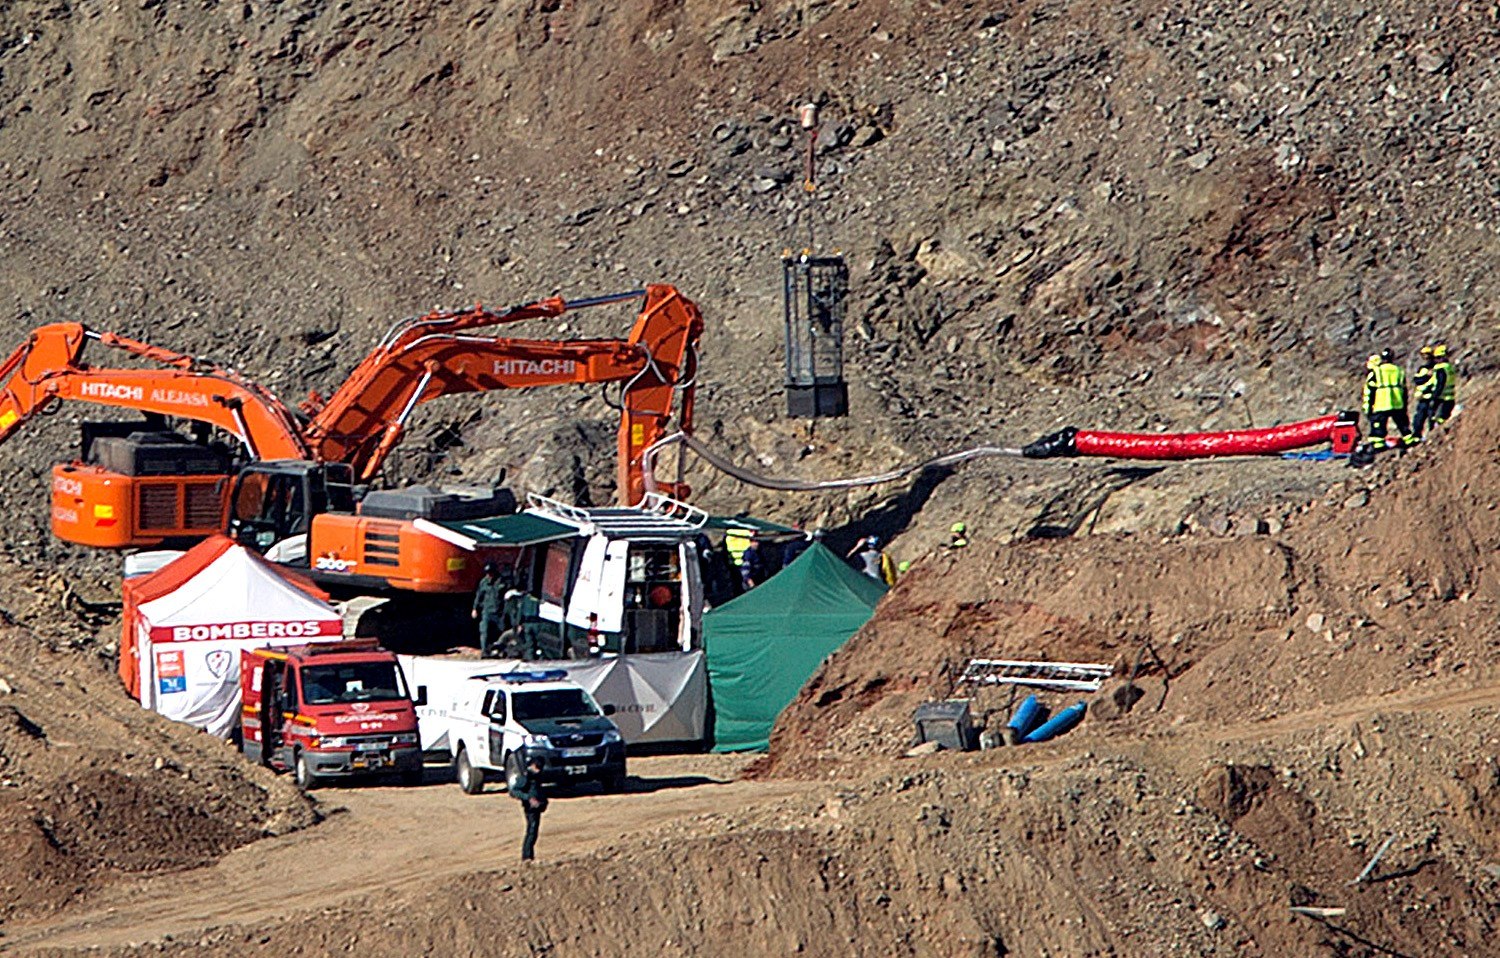 Foto: Mineros excavan galería para rescatar a niño caído en pozo, 25 enero 2019